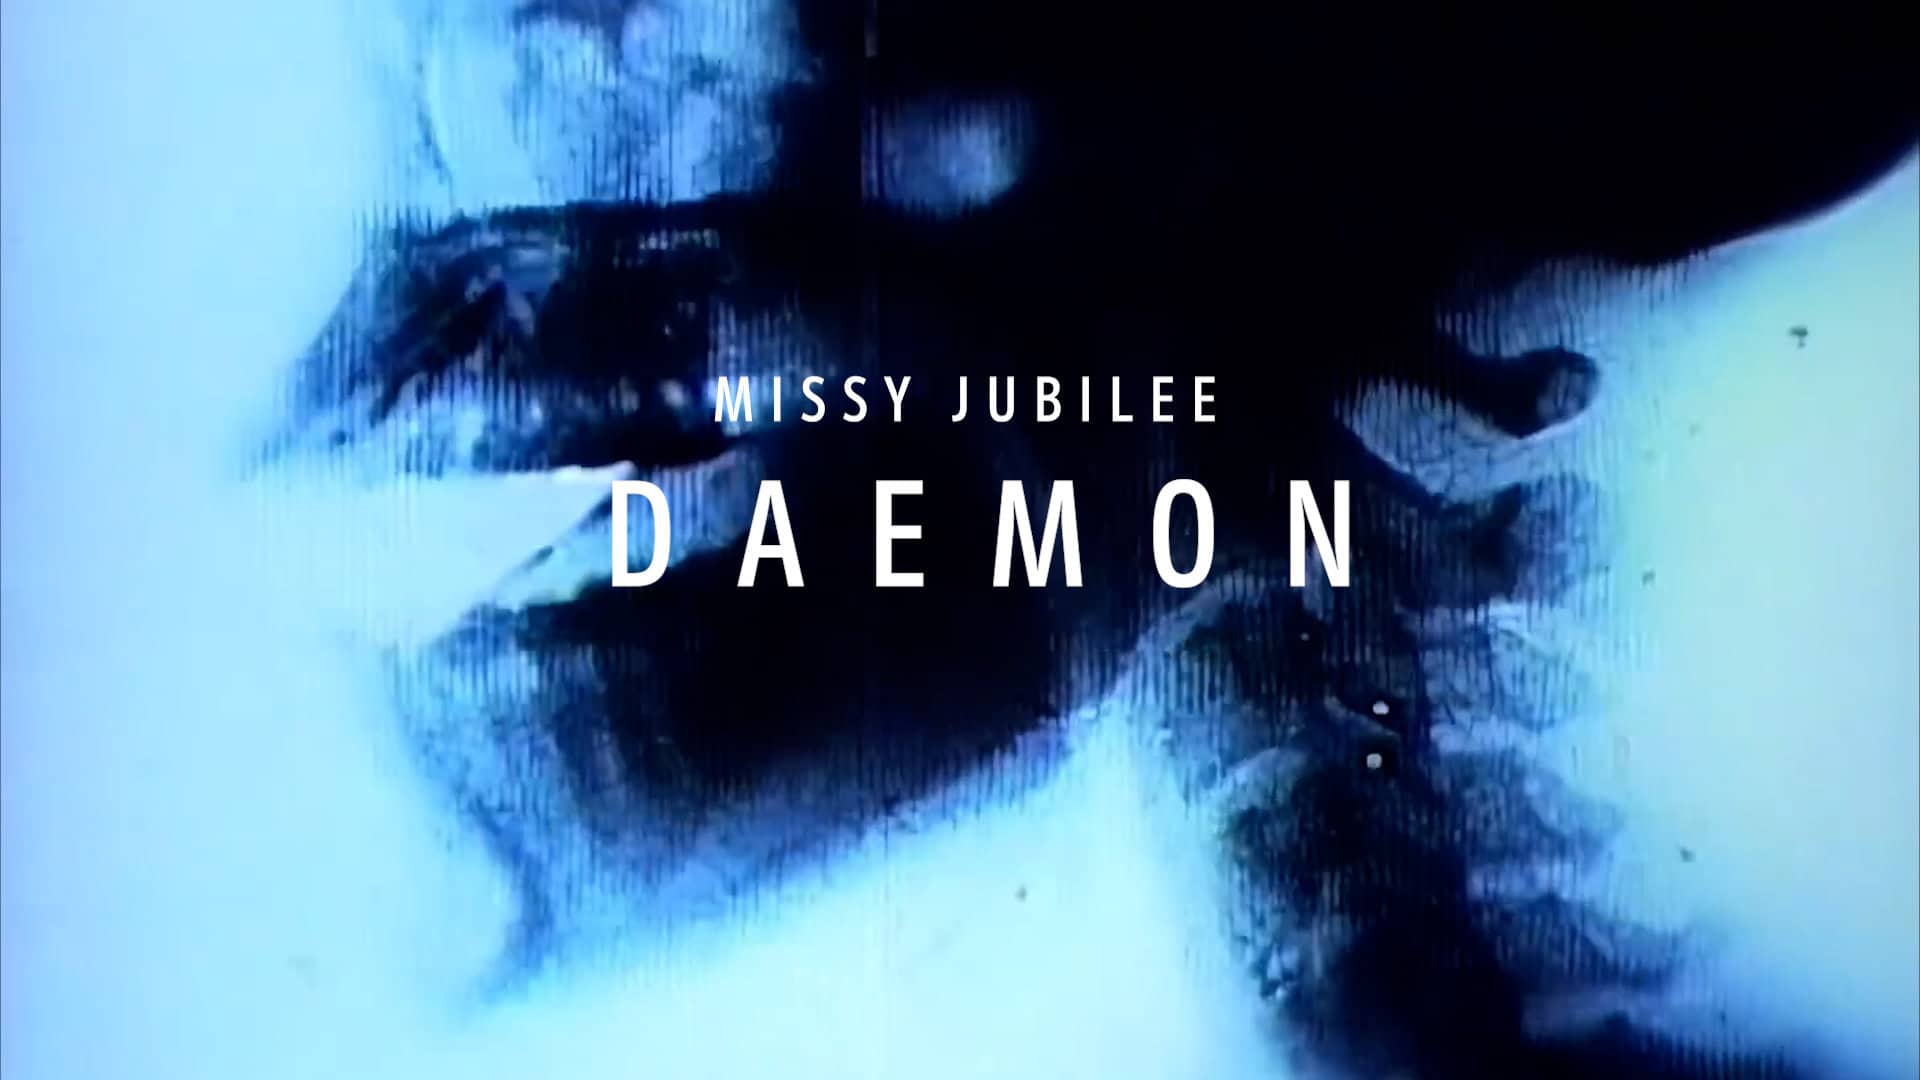 Missy Jubilee XXX DAEMON film poster